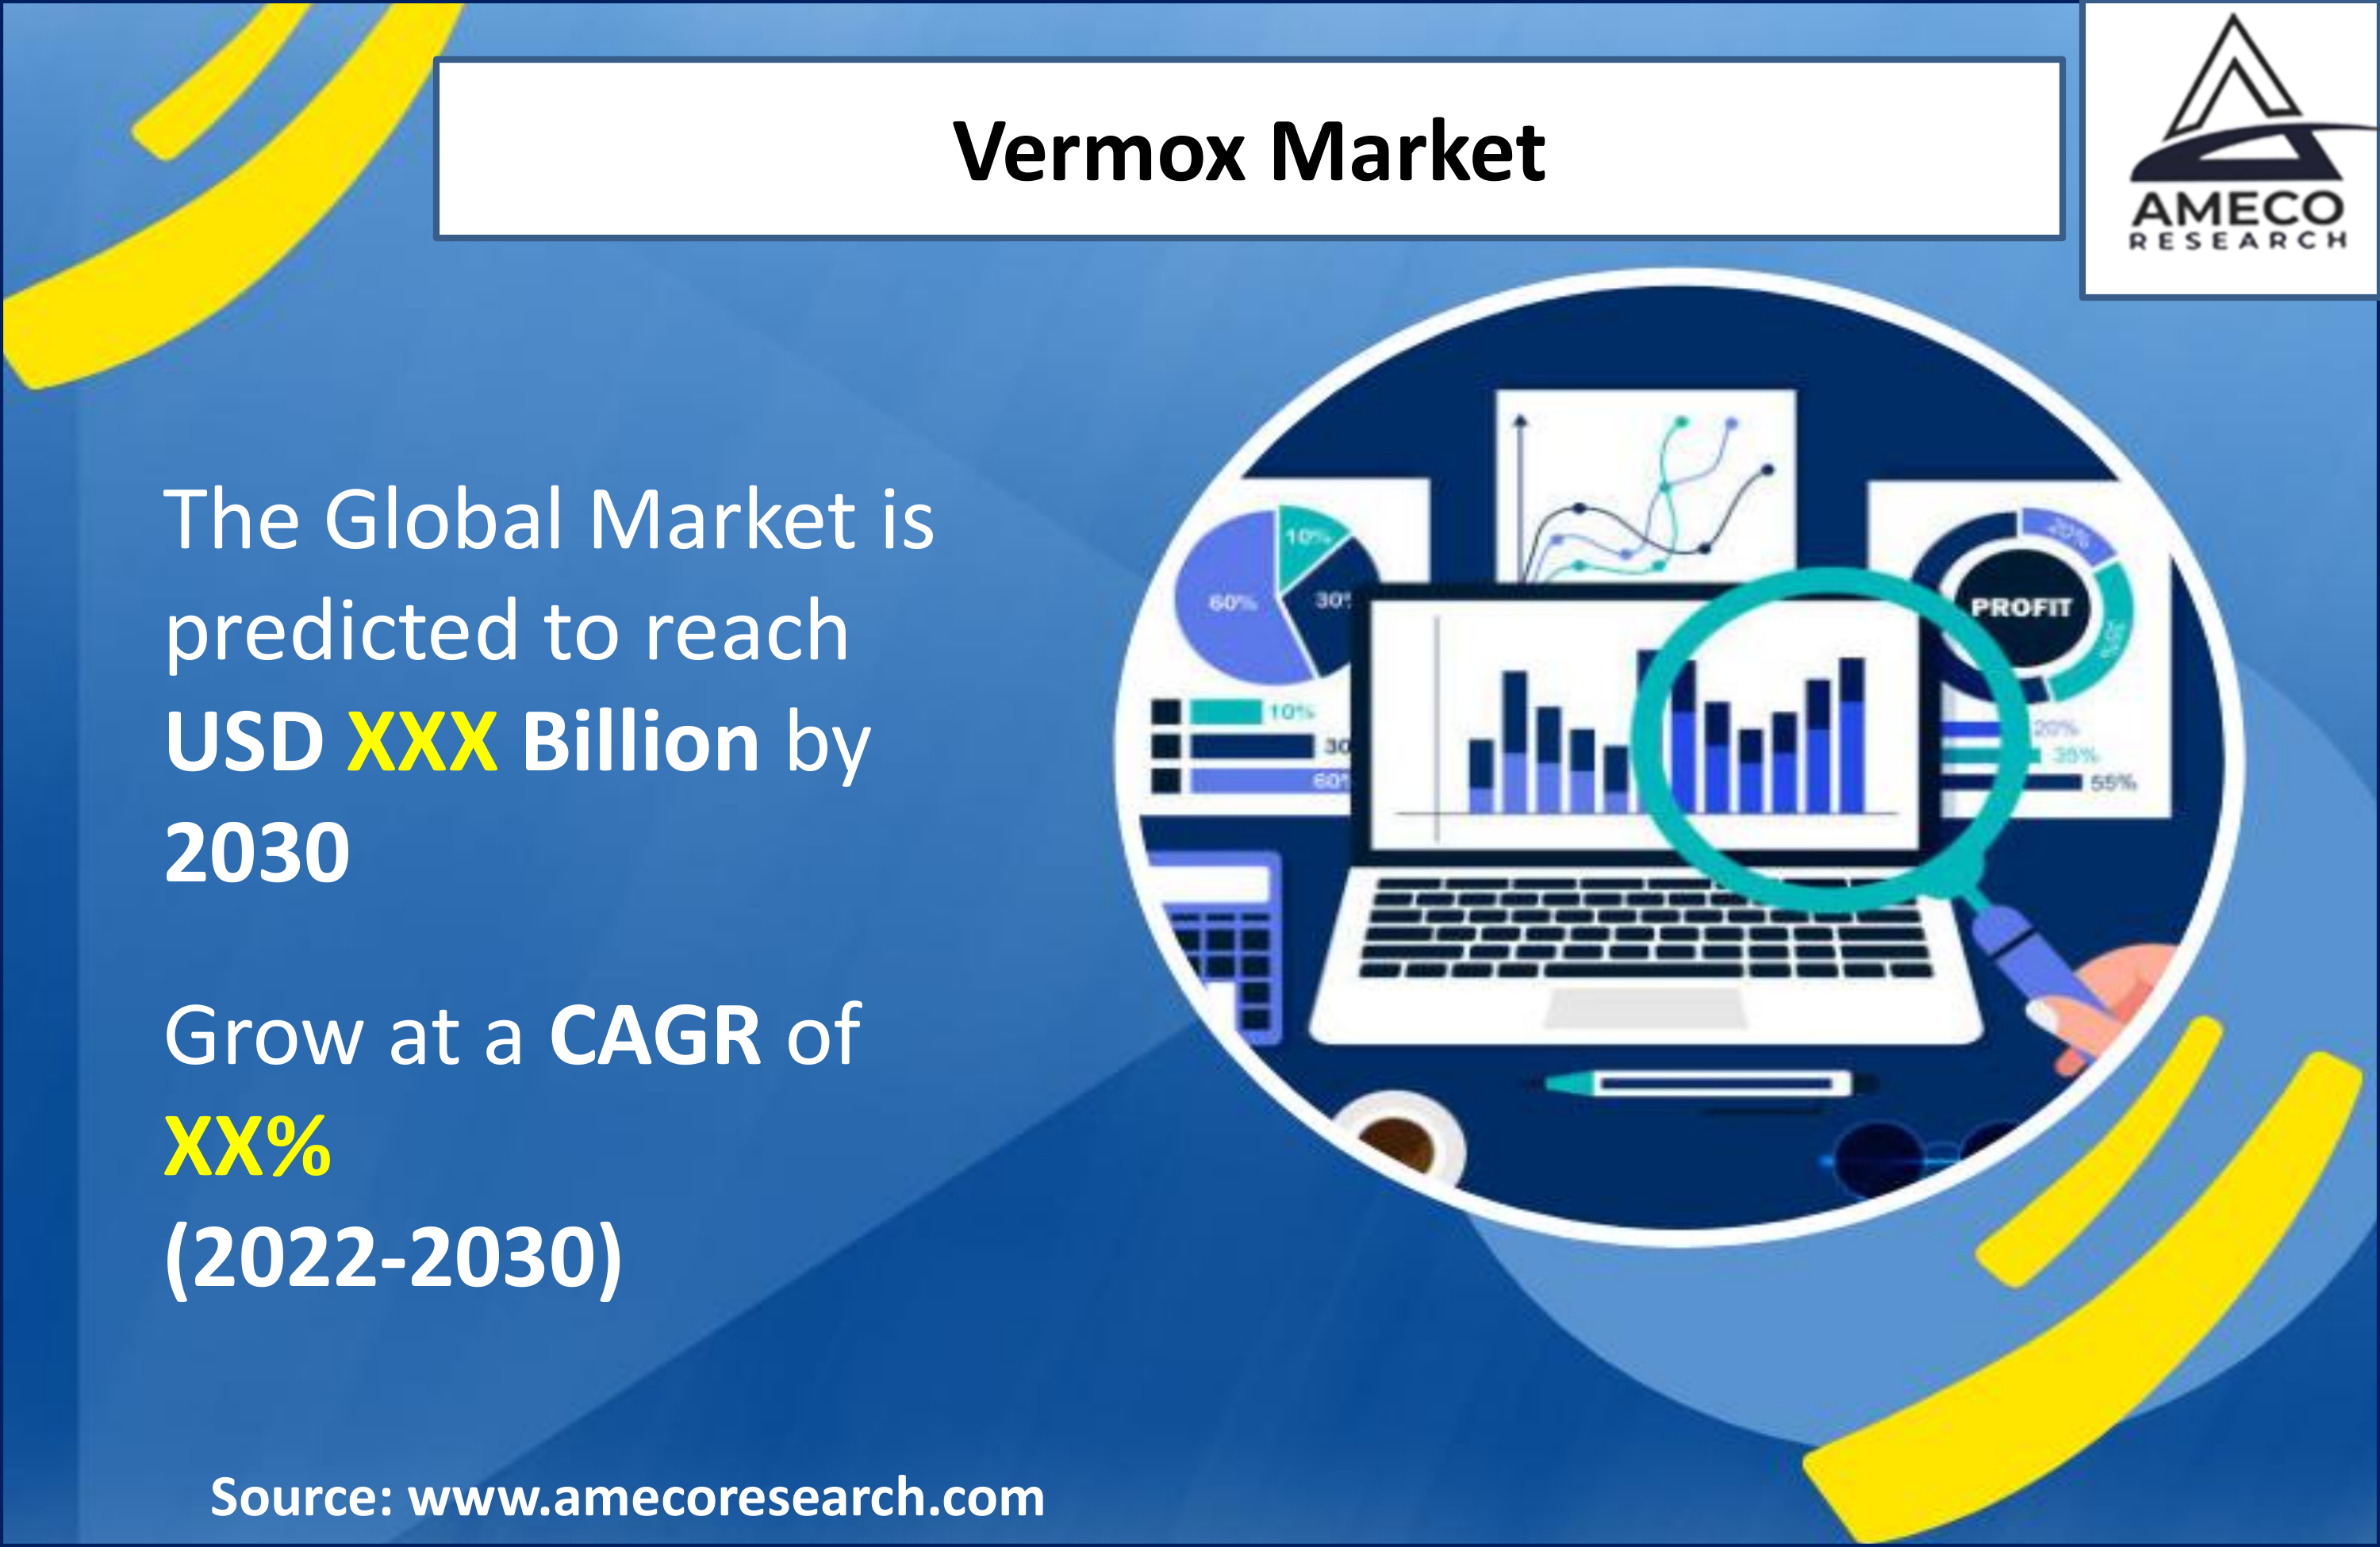 Vermox Market